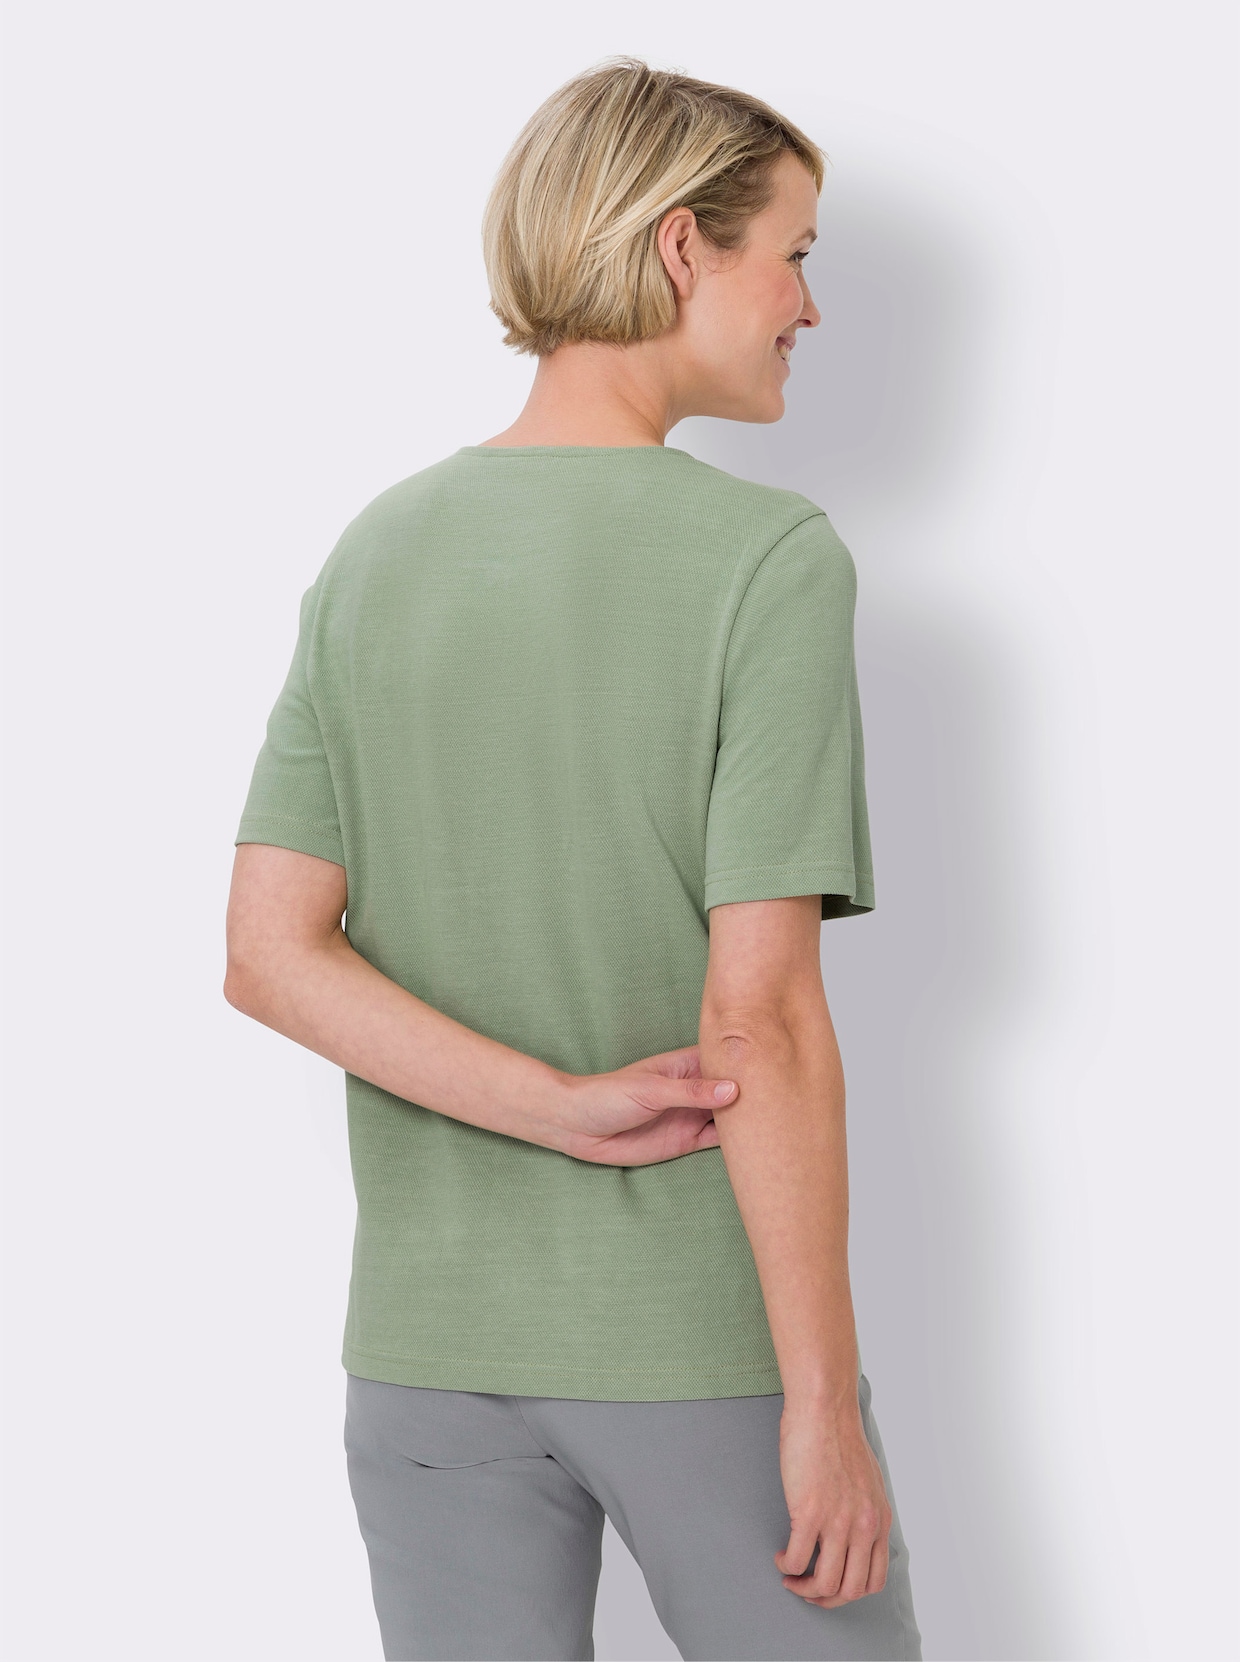 Tričko s krátkým rukávem - eukalypt